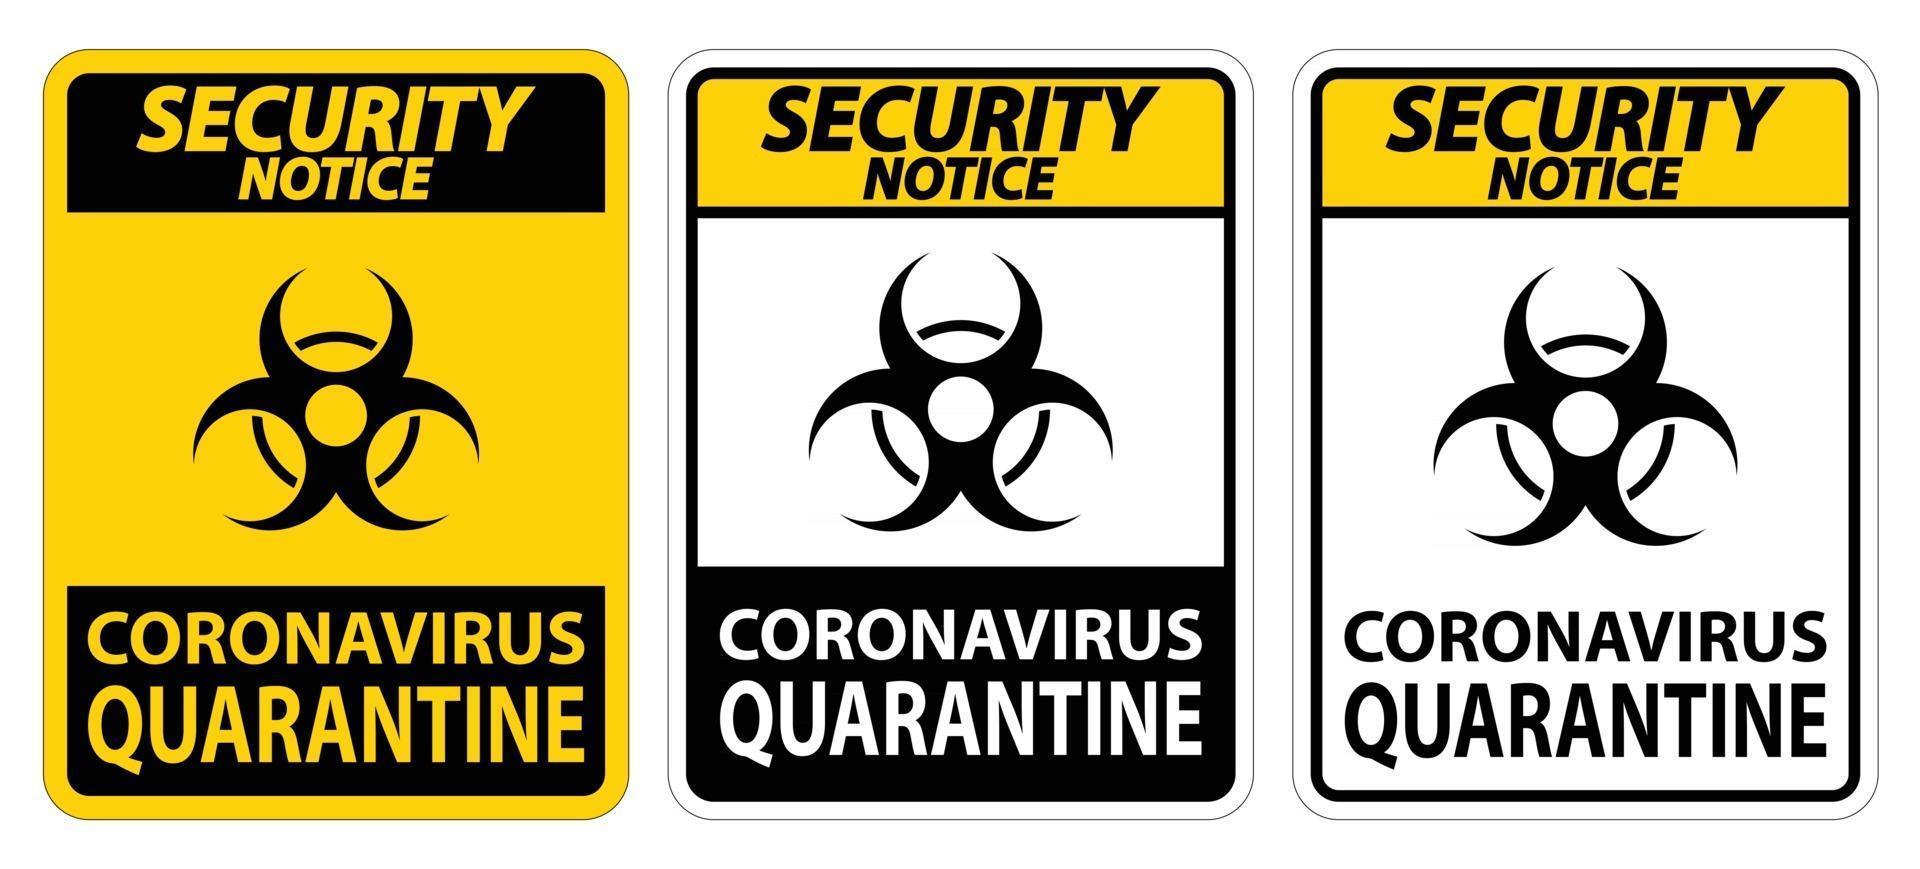 avviso di sicurezza coronavirus quarantena segno isolato su sfondo bianco, illustrazione vettoriale eps.10